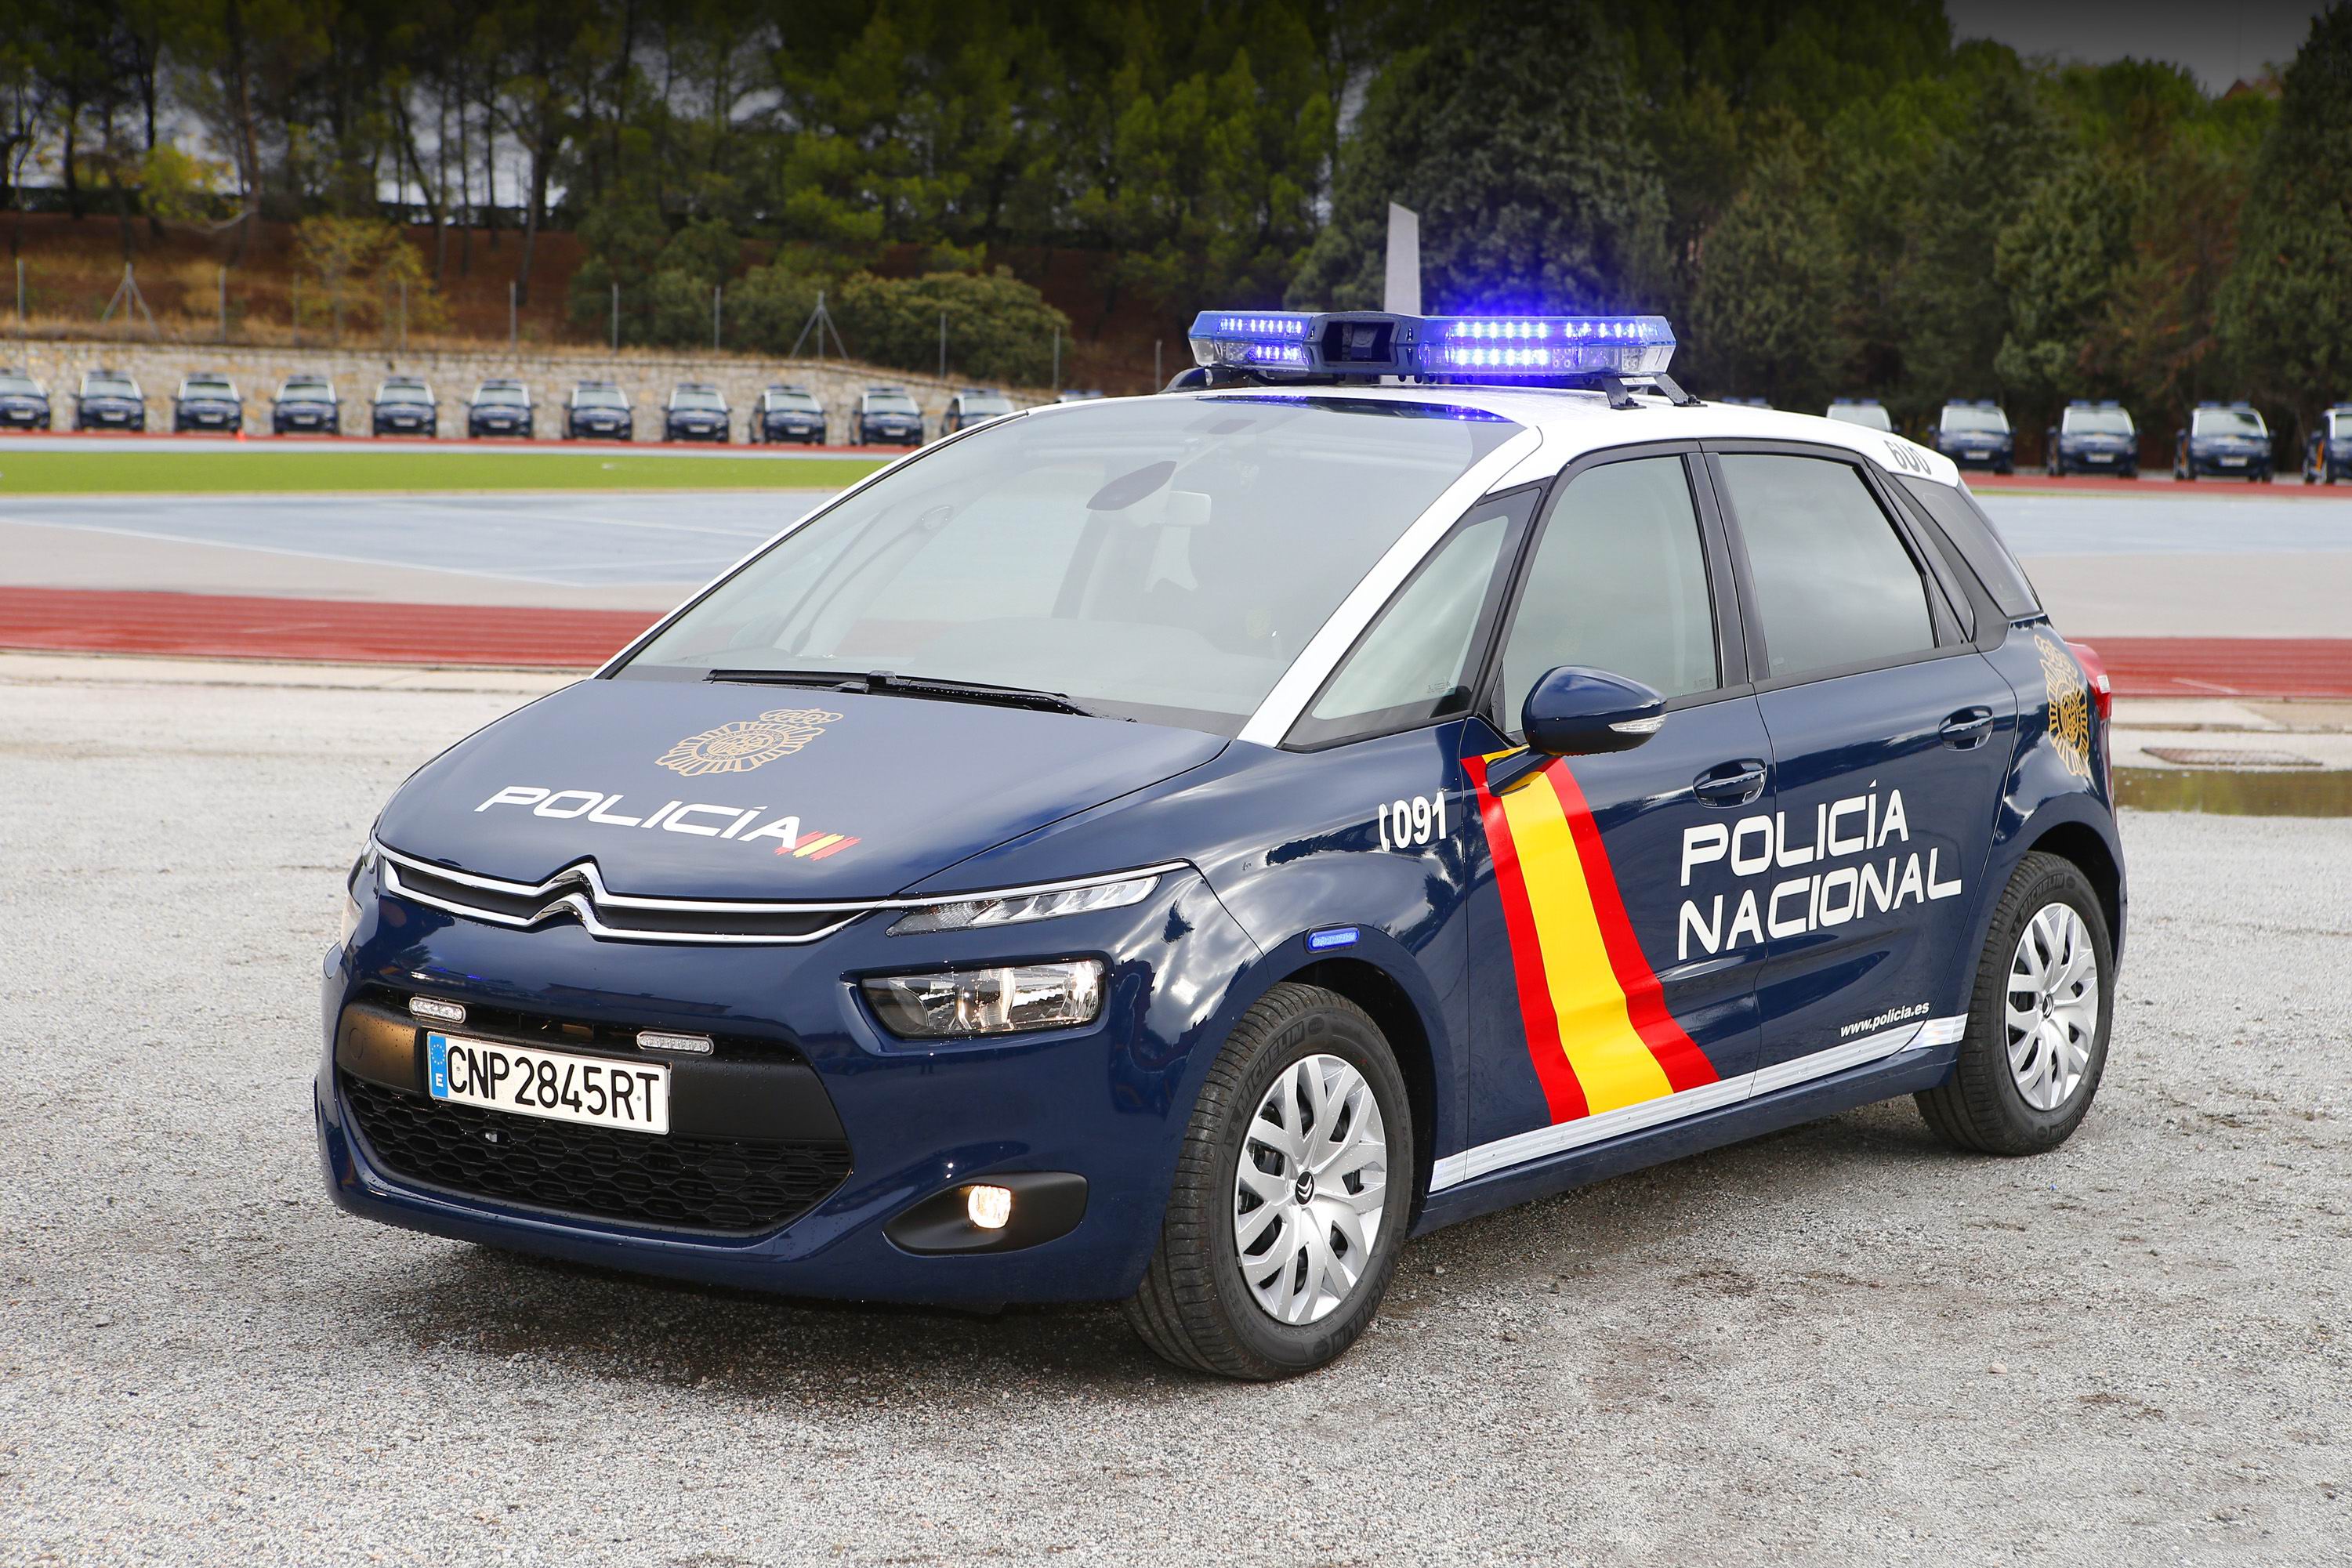 La Policía Nacional incorpora a su flota un millar de Citroën C4 Picasso